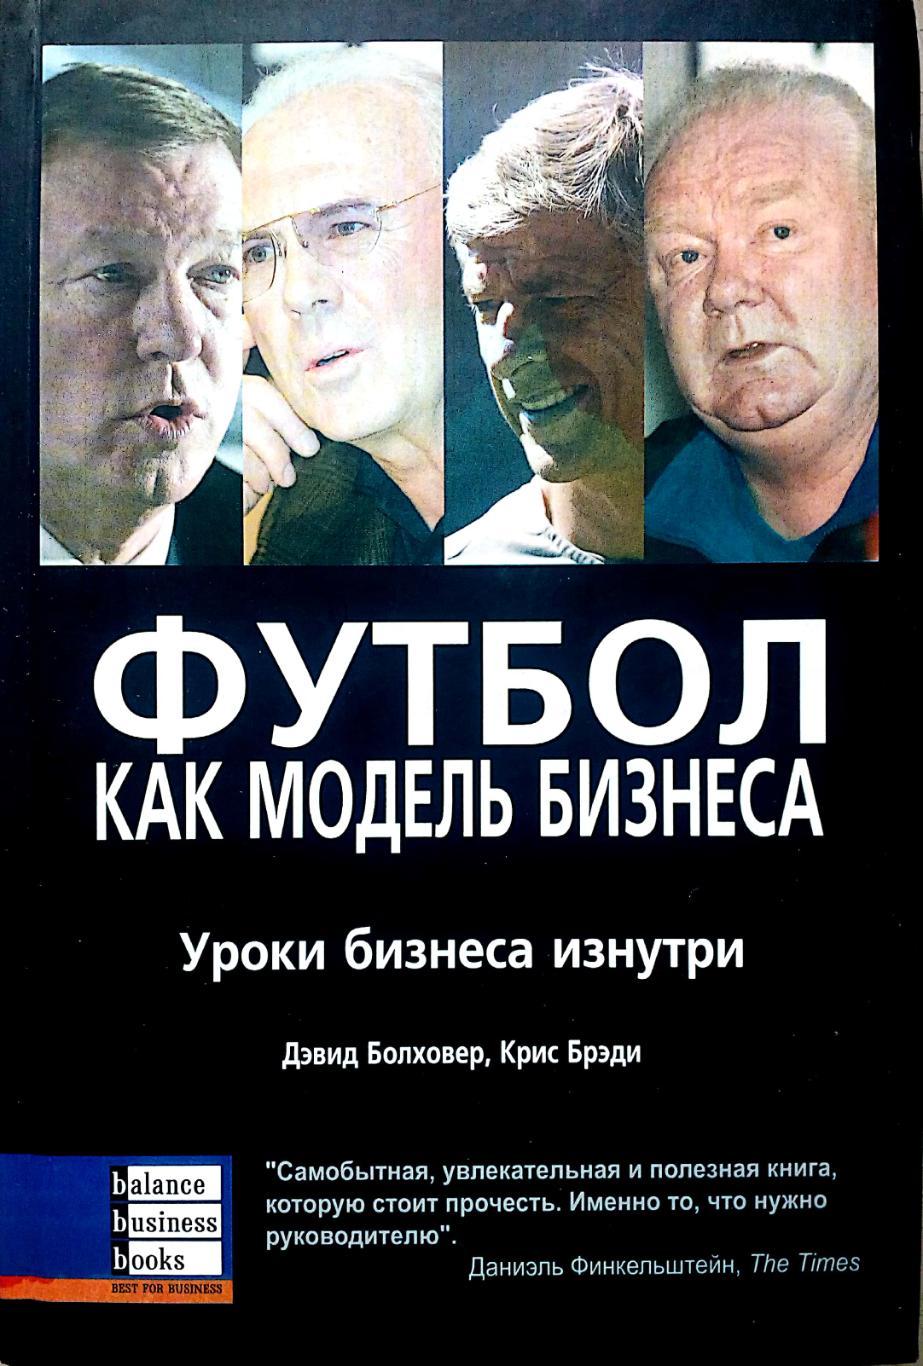 Д.Болховер, К.Брэди. Футбол как модель бизнеса (Днепропетровск, 2005)